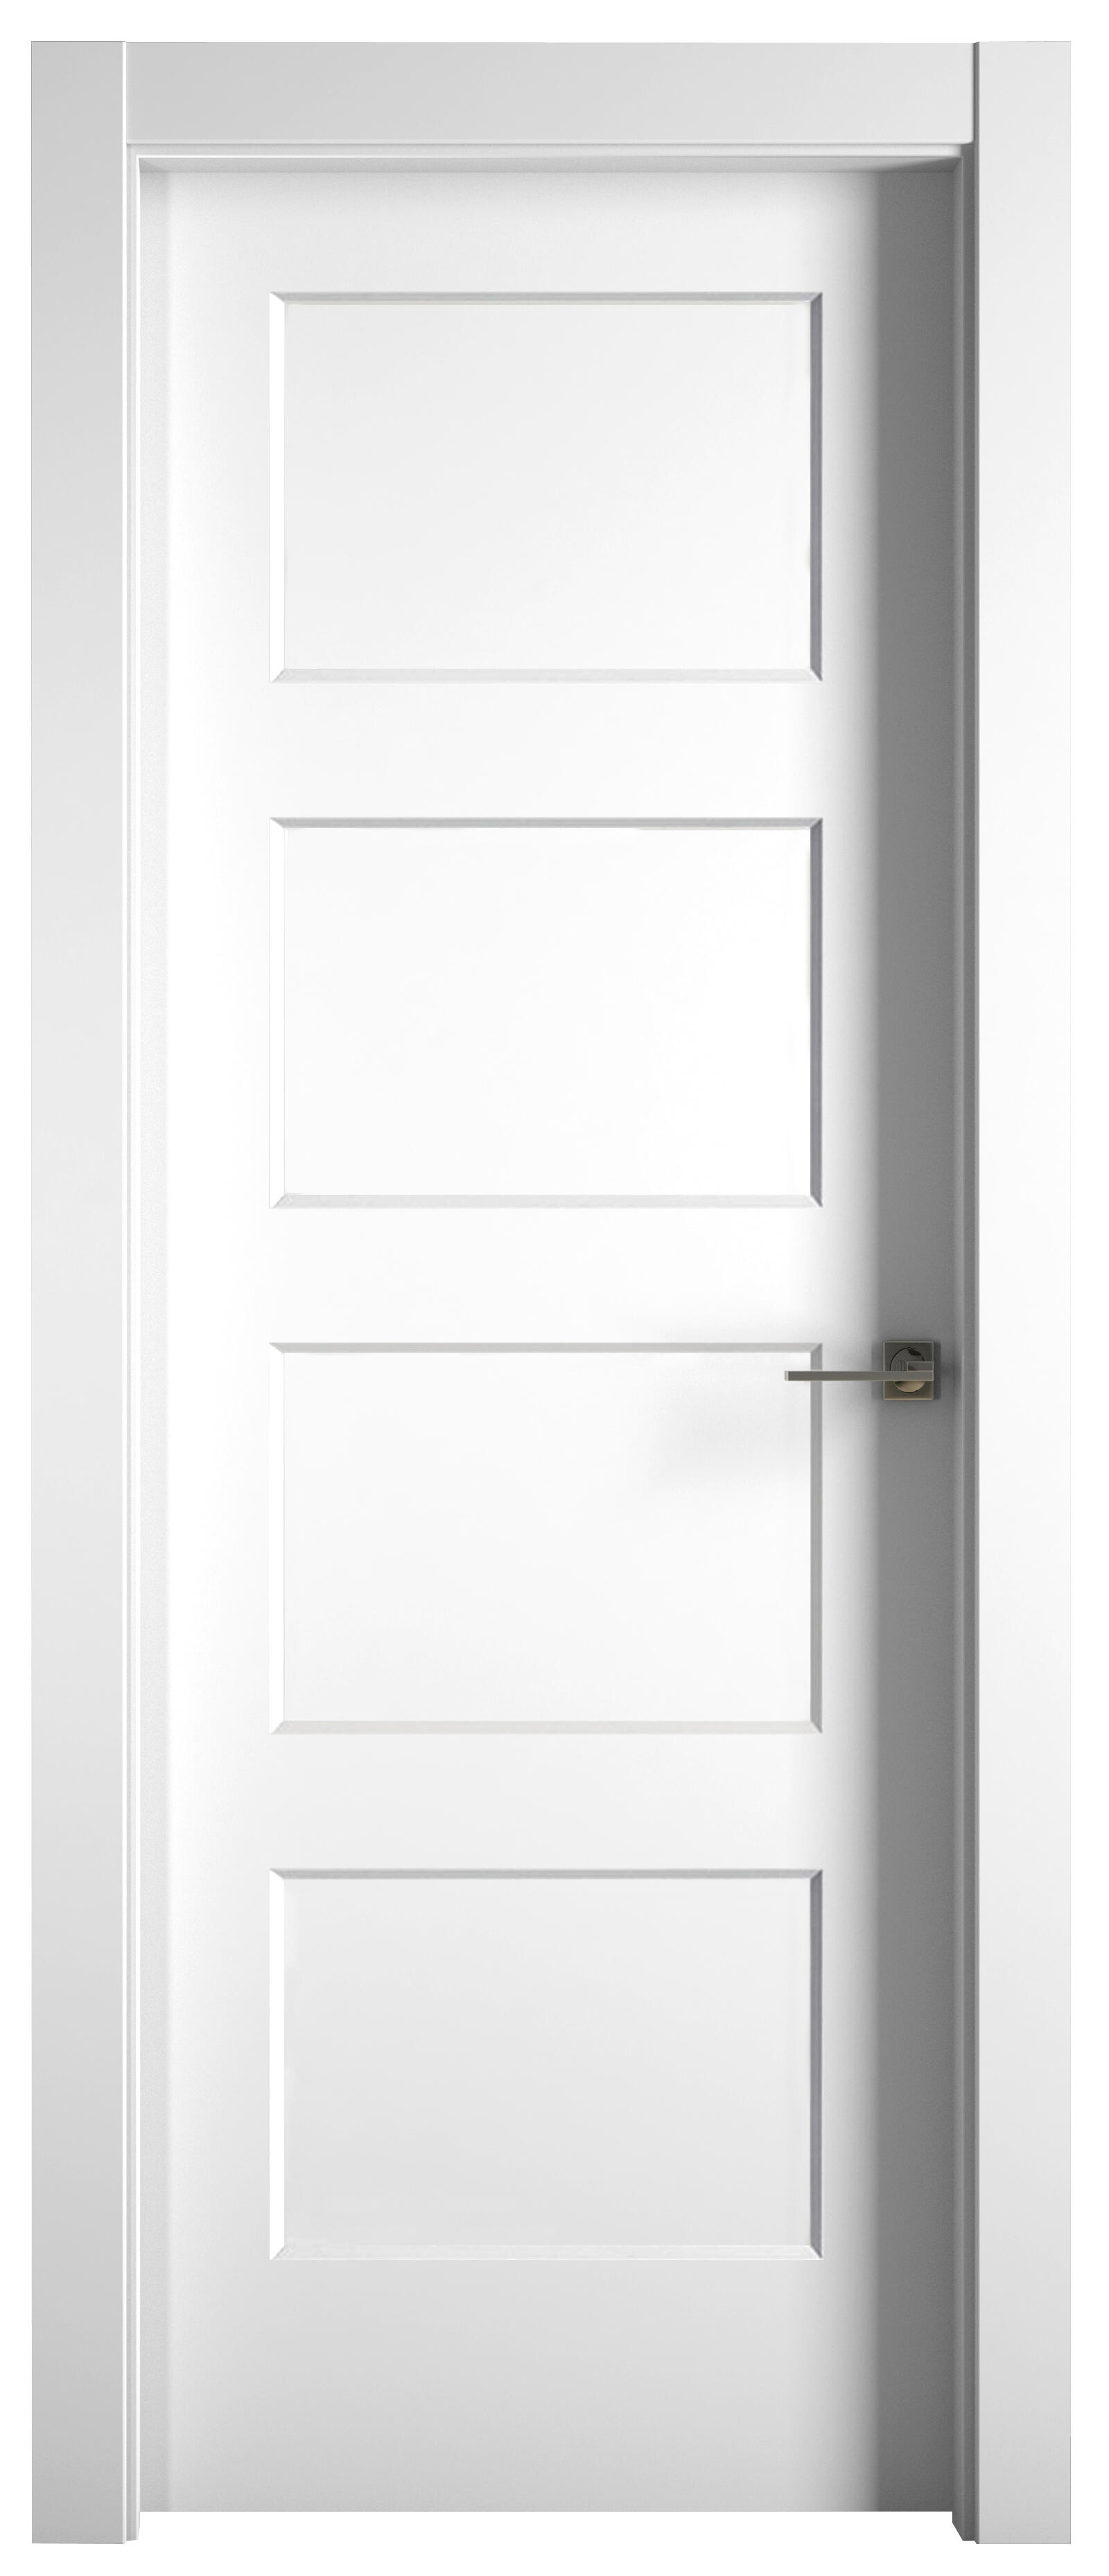 Puerta abatible bosco blanca premium apertura izquierda de 9x105 cm